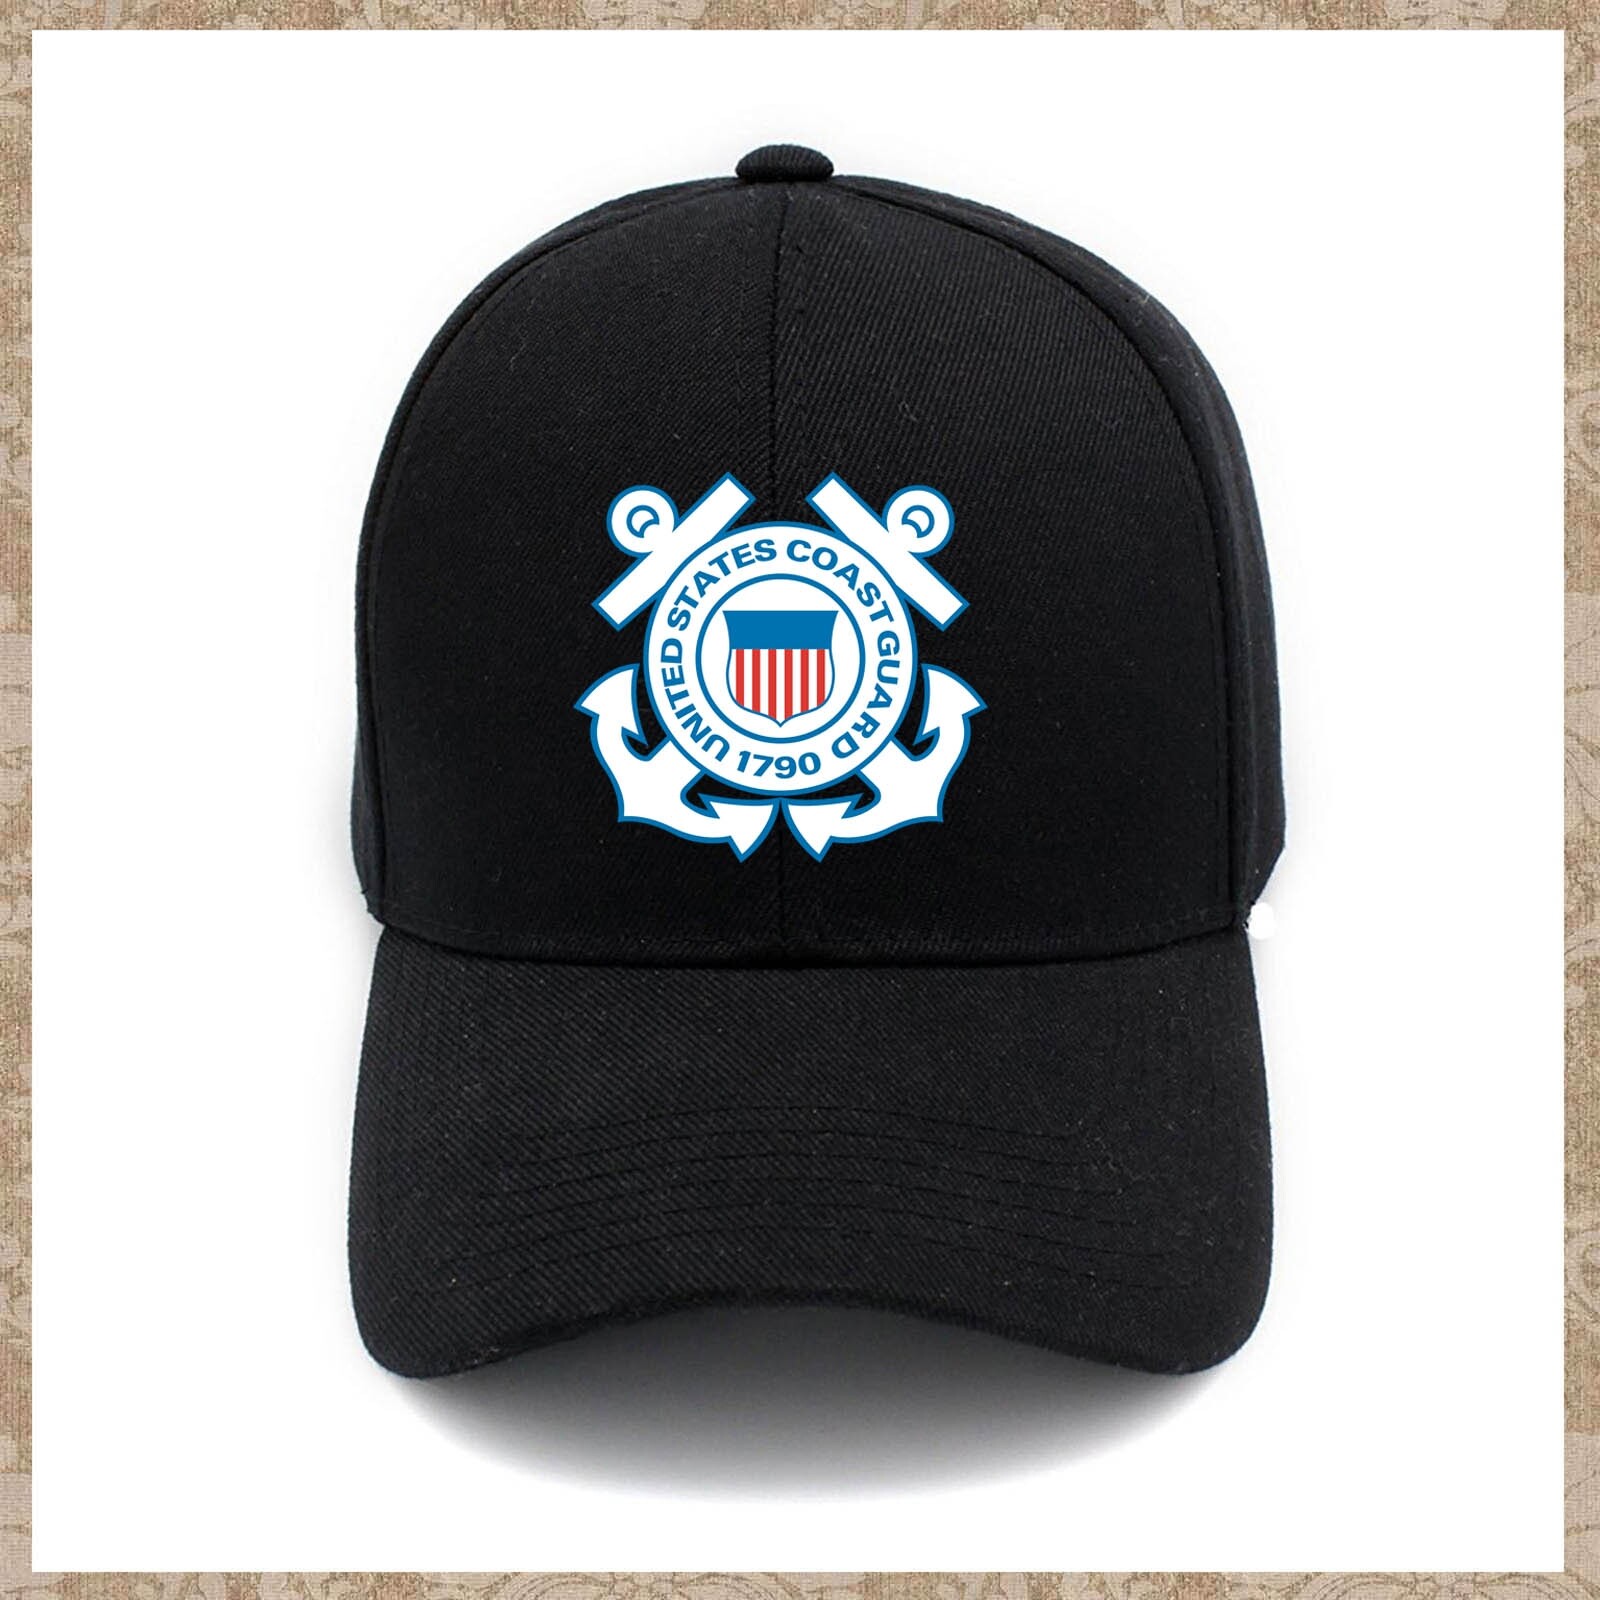 Denim Cap The US Coast Guard Baseball Dad Cap Classic Adjustable Sports for Men Women Hat